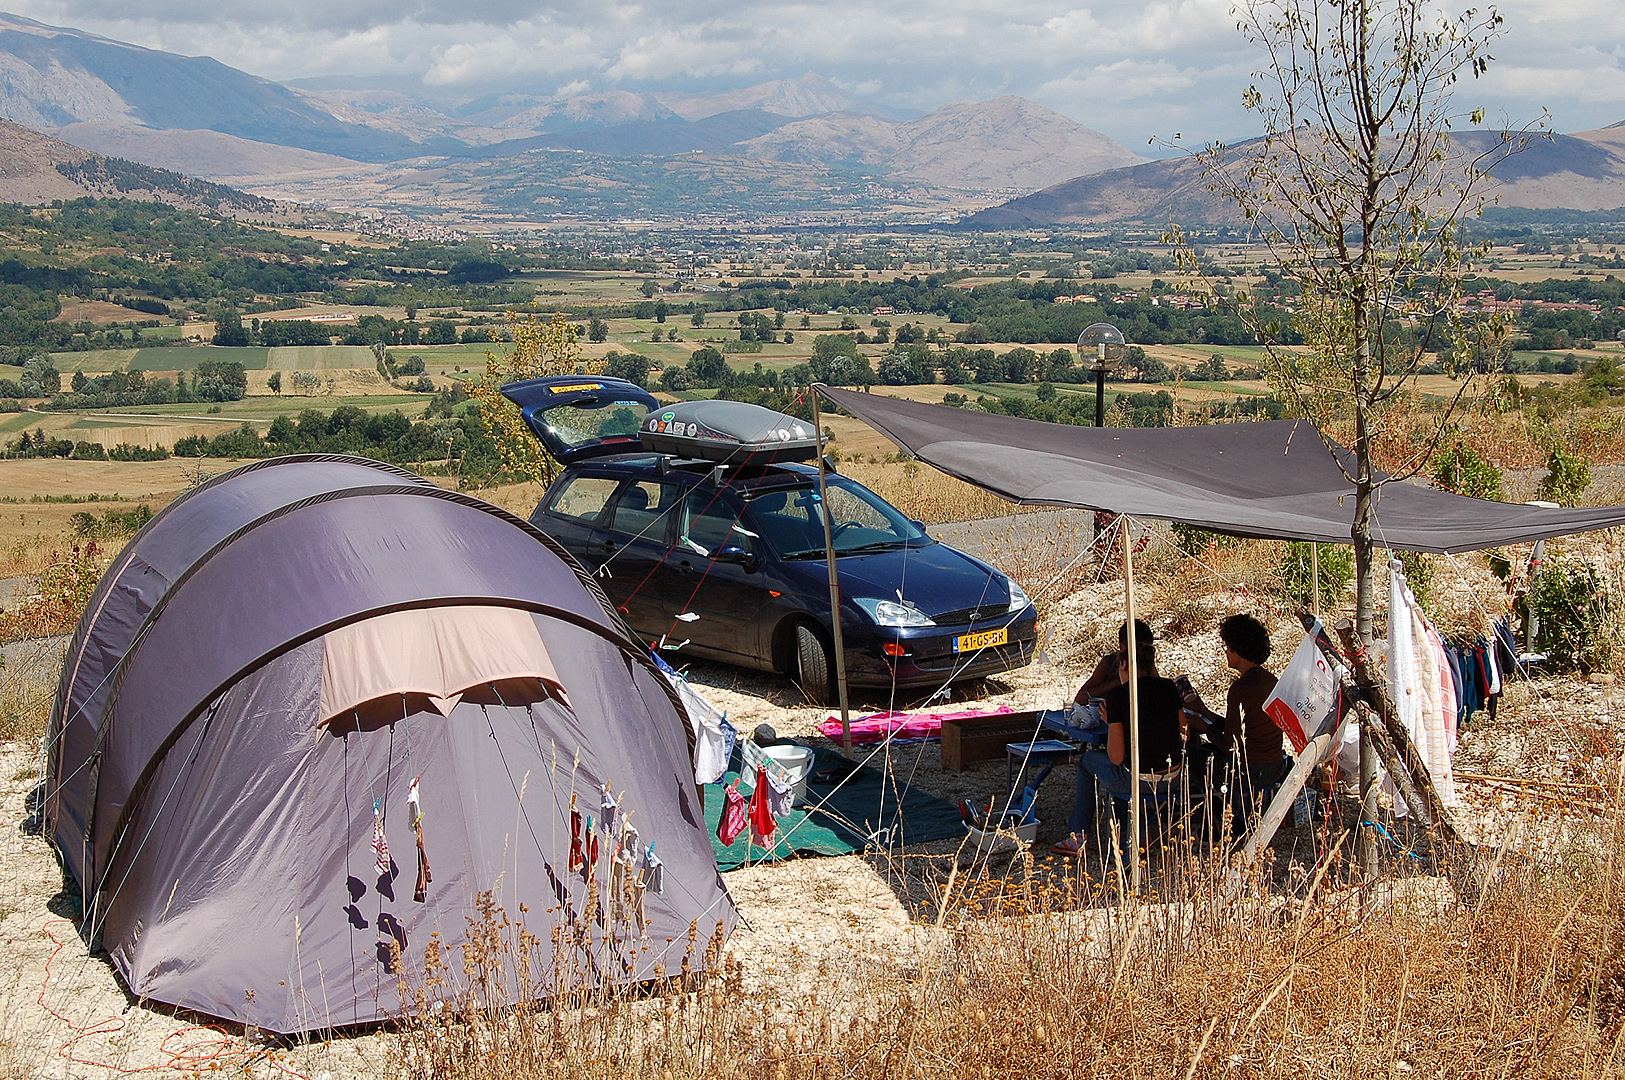 Op de camping (Abruzzen, Itali)., On the campsite (Abruzzo, Italy)